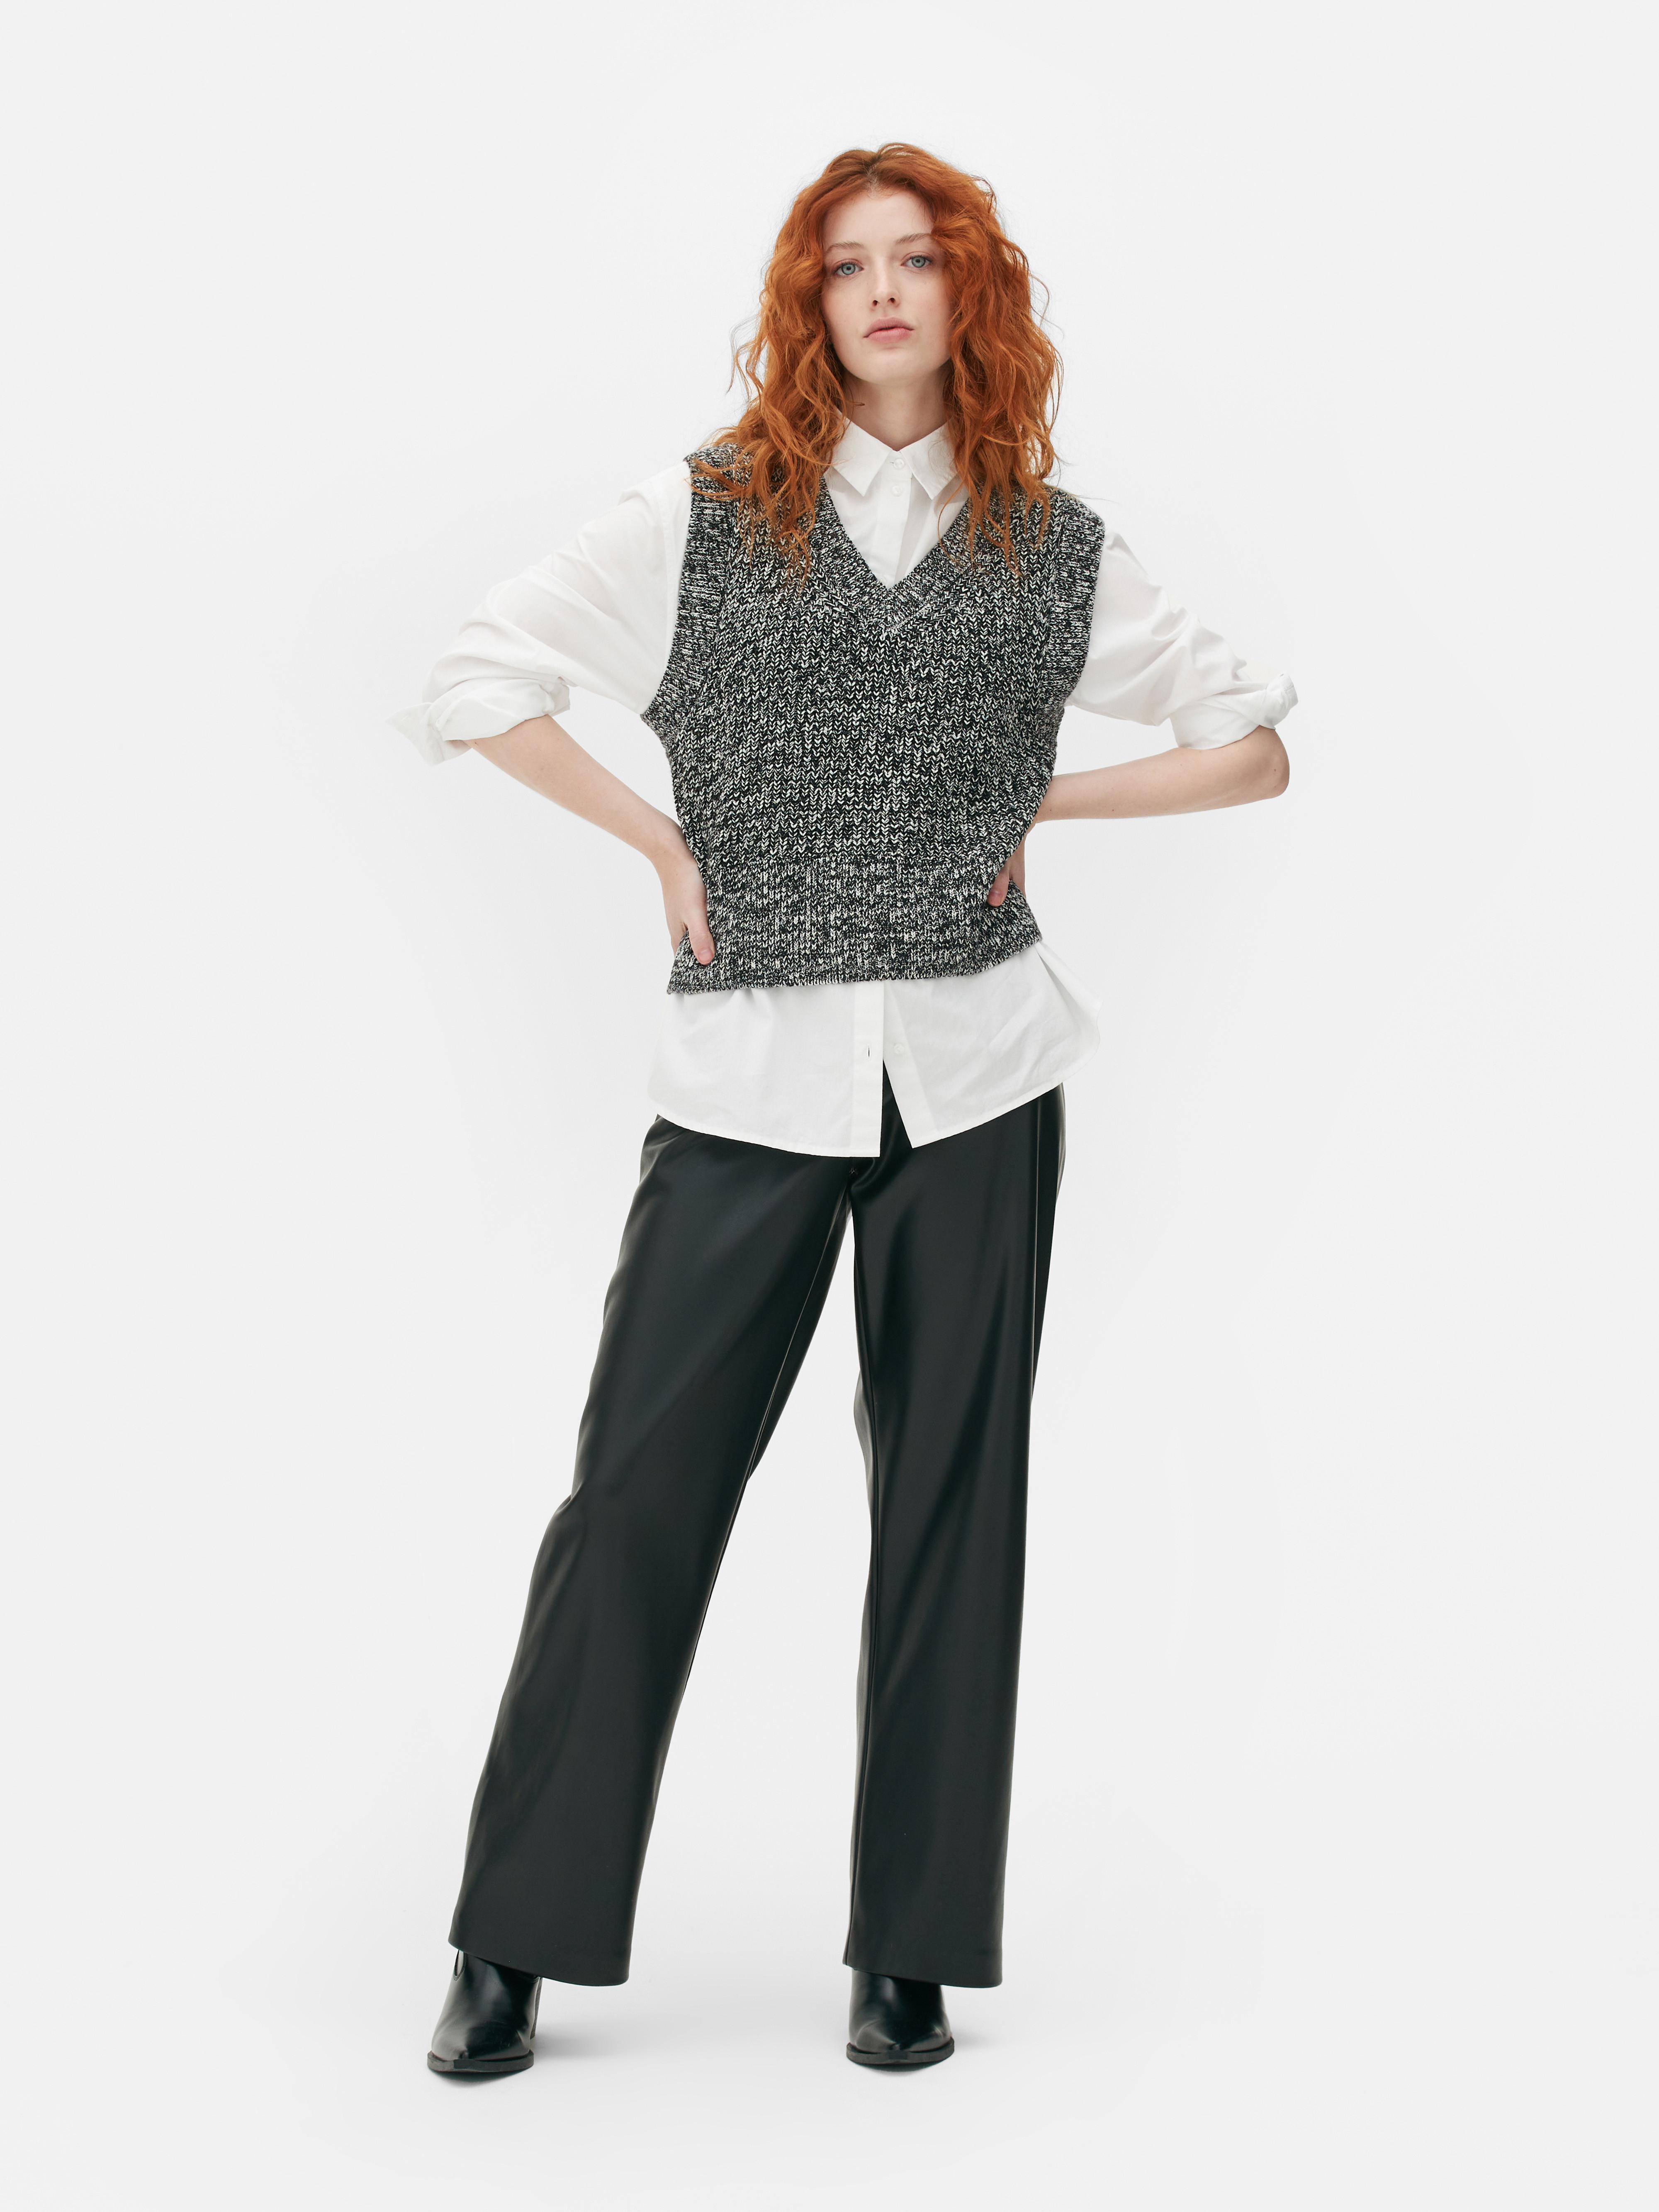 APOKIOG Primark Shop Online Women's Plus Size Vest Crop Wire Bra